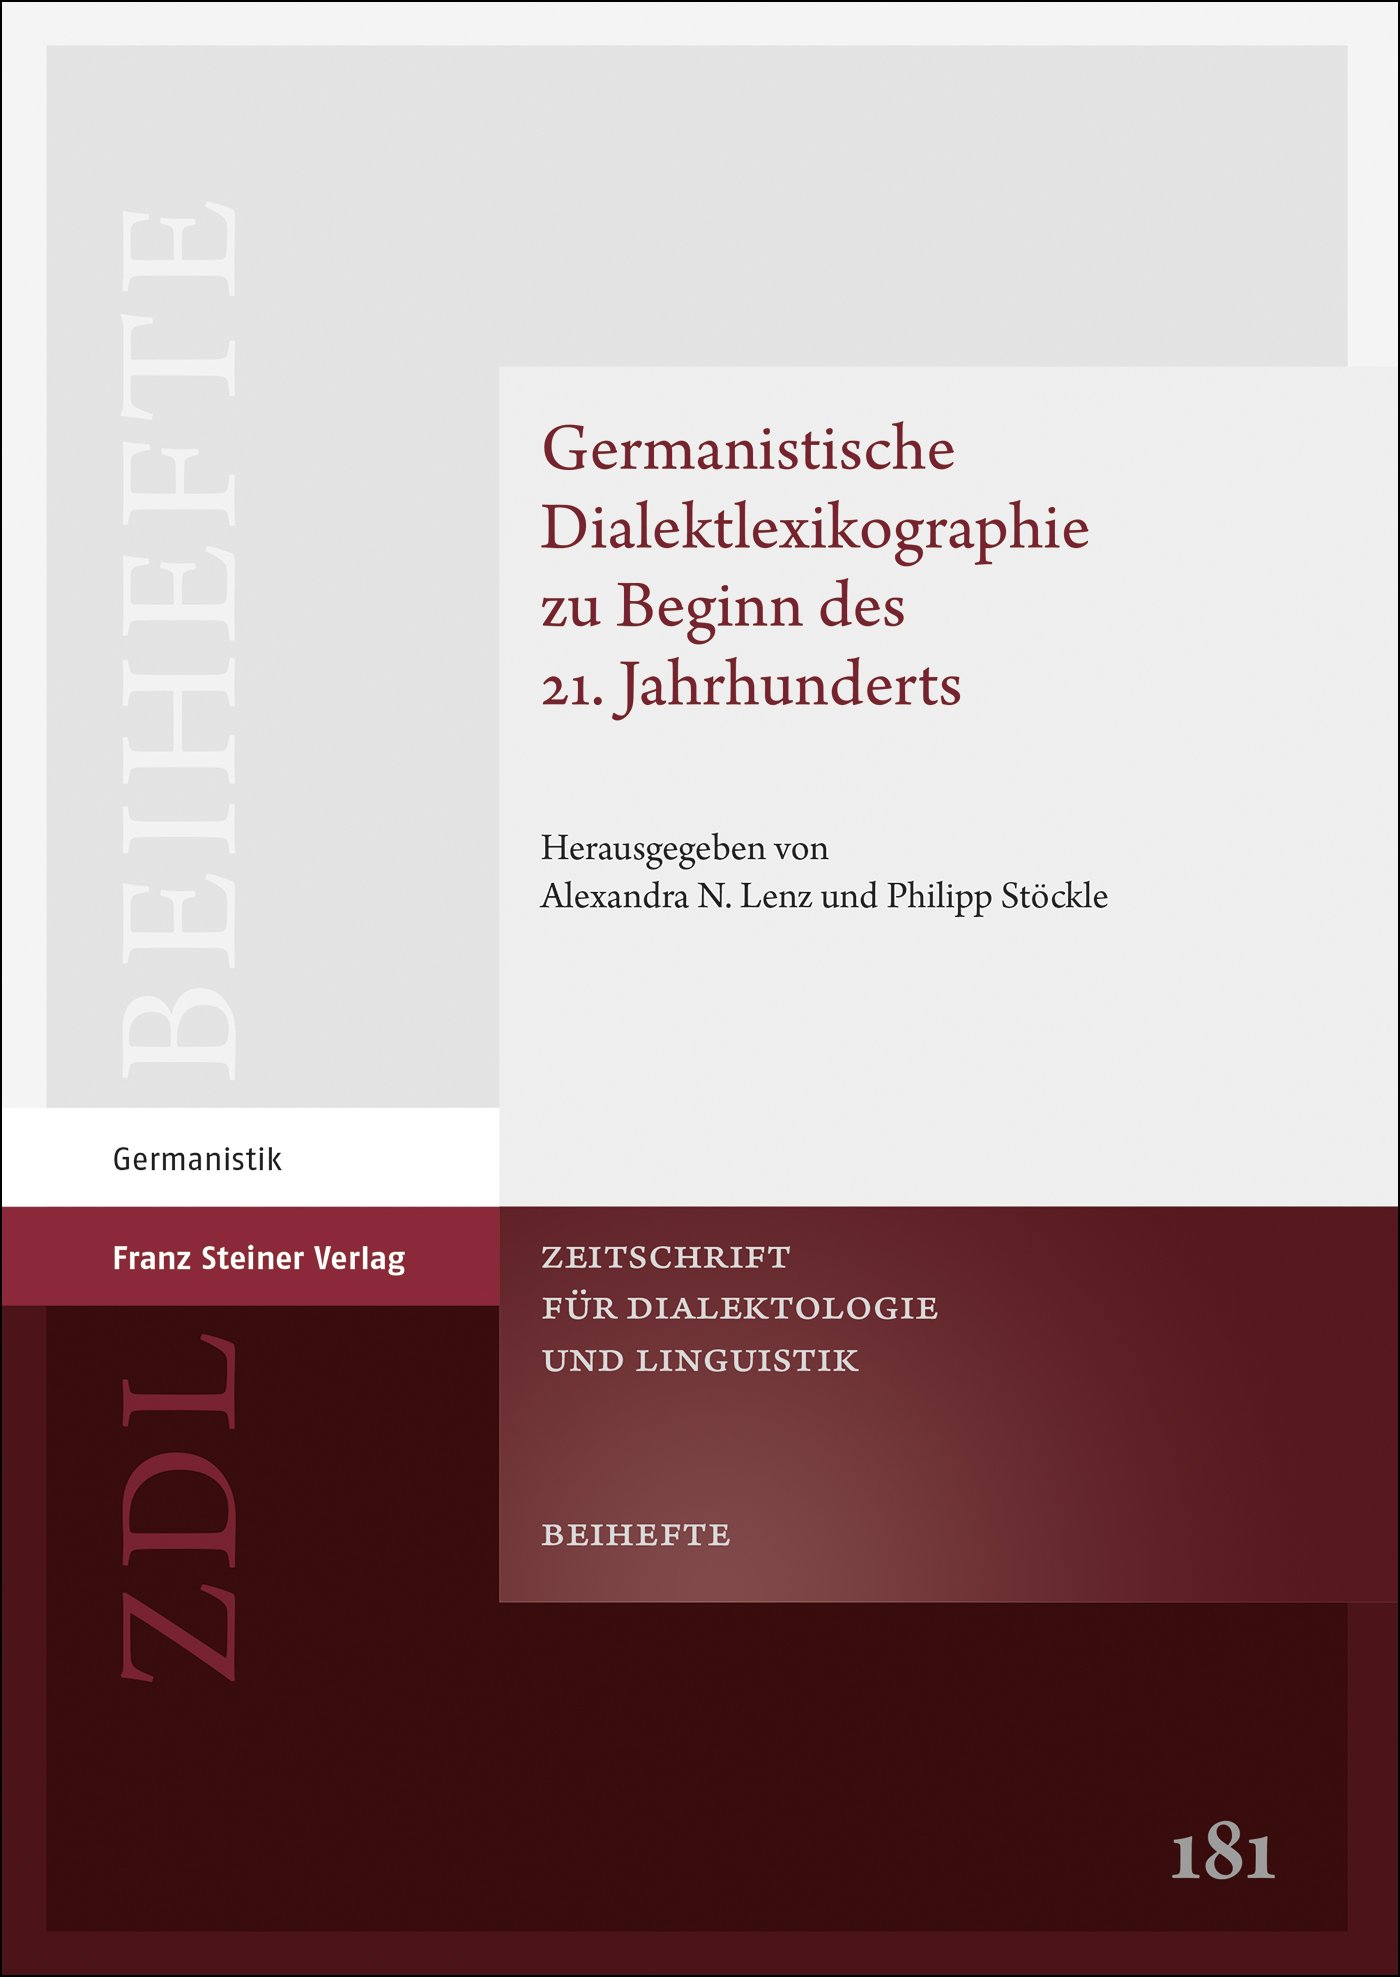 Germanistische Dialektlexikographie zu Beginn des 21. Jahrhunderts